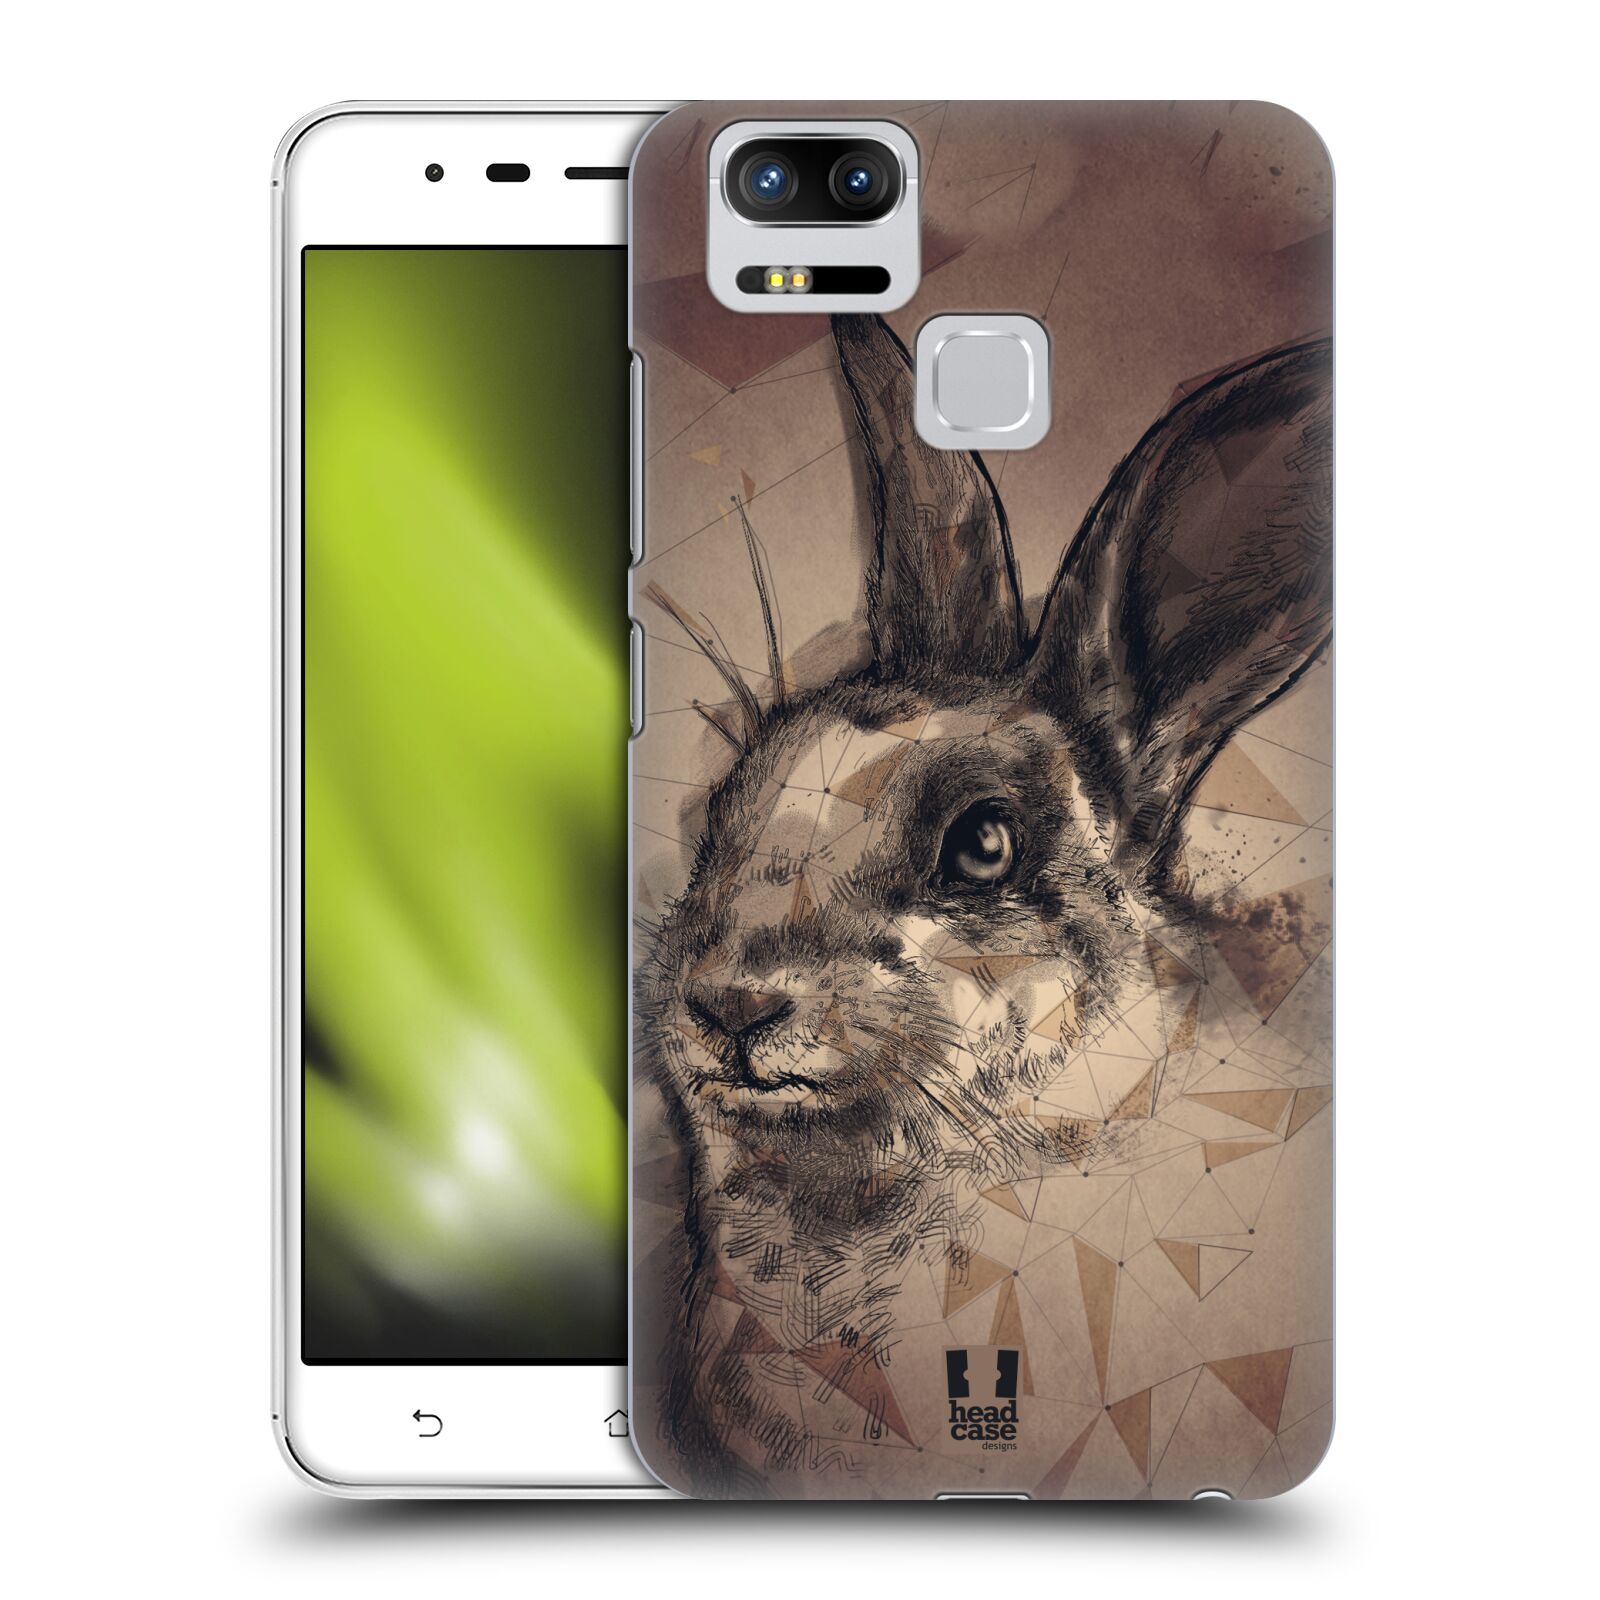 HEAD CASE plastový obal na mobil Asus Zenfone 3 Zoom ZE553KL vzor Skica zvíře kreslené zajíc